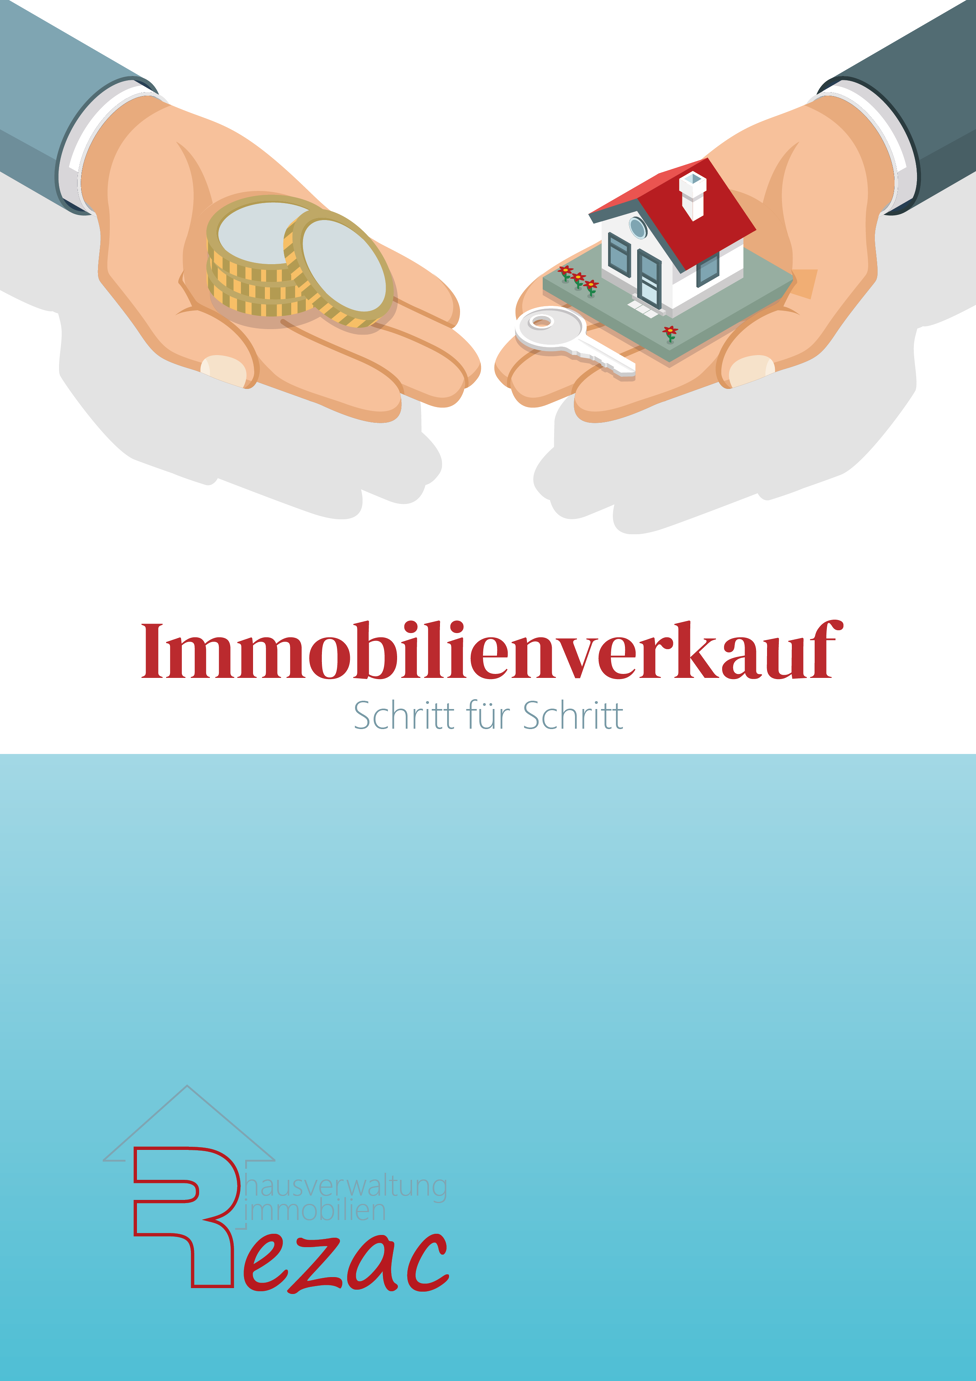 Coverbild des E-Books 'Immobilienverkauf - Schritt für Schritt' von Rezac